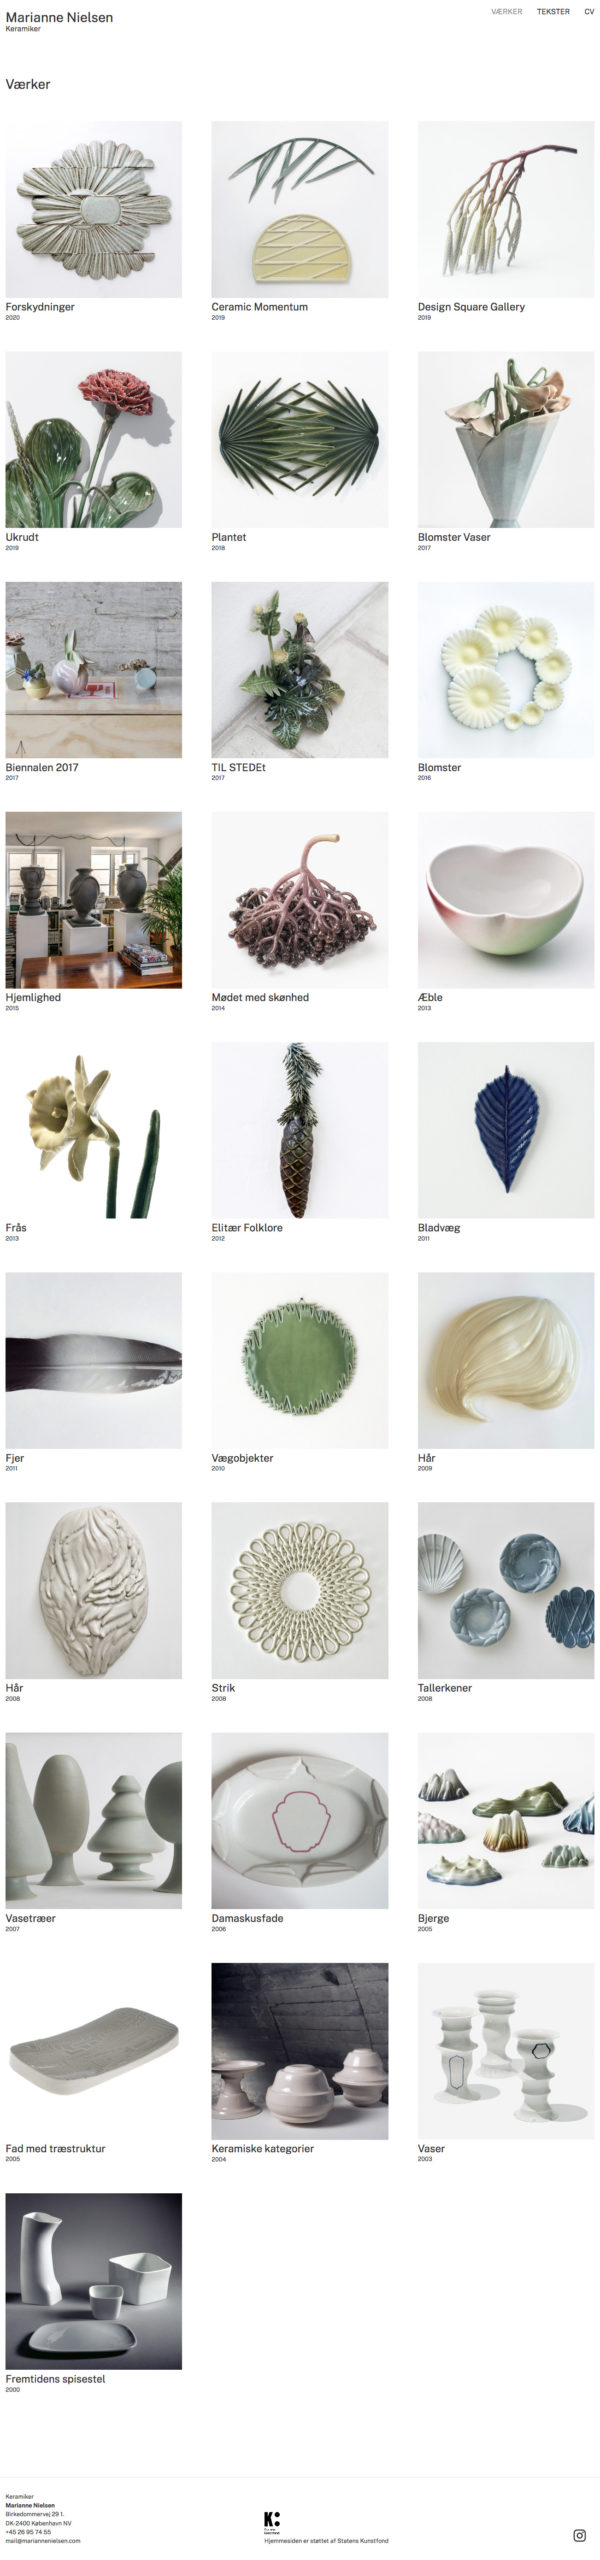 WordPress-site til keramiker Marianne Nielsen